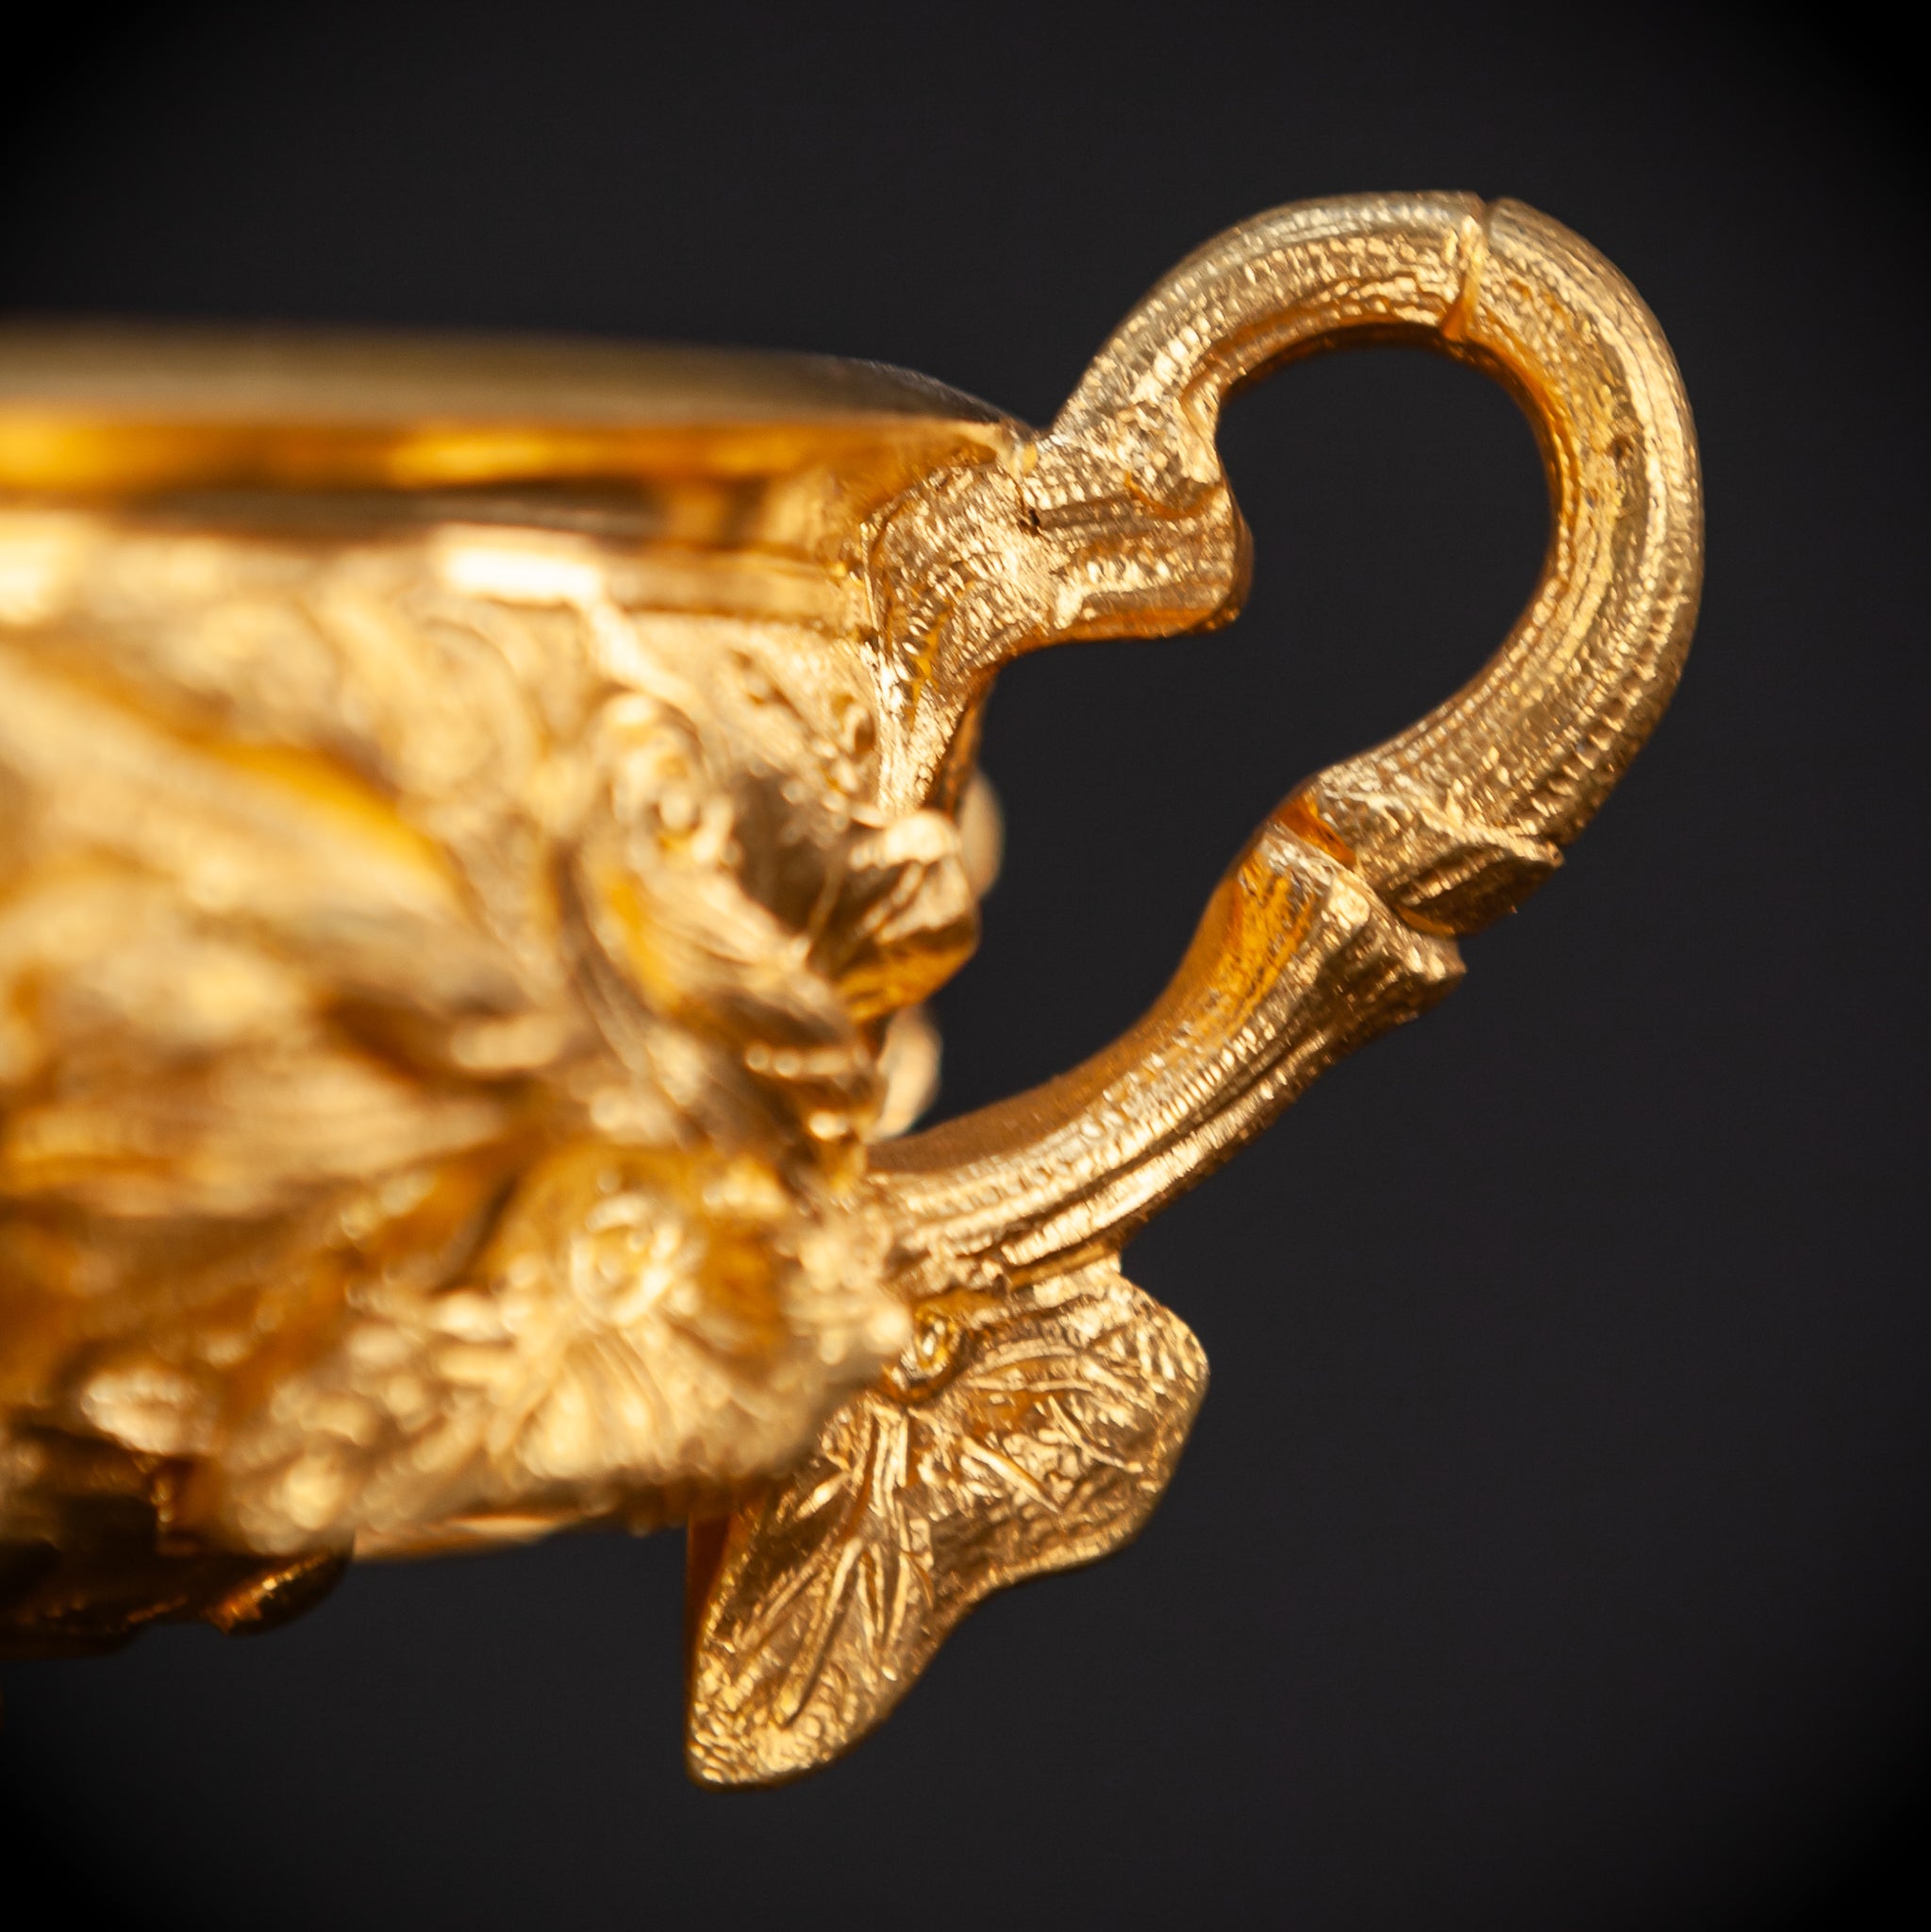 Pair of Gilded Bronze Urns / Cassolettes | 1700s Antique | 7.3" / 17.5 cm